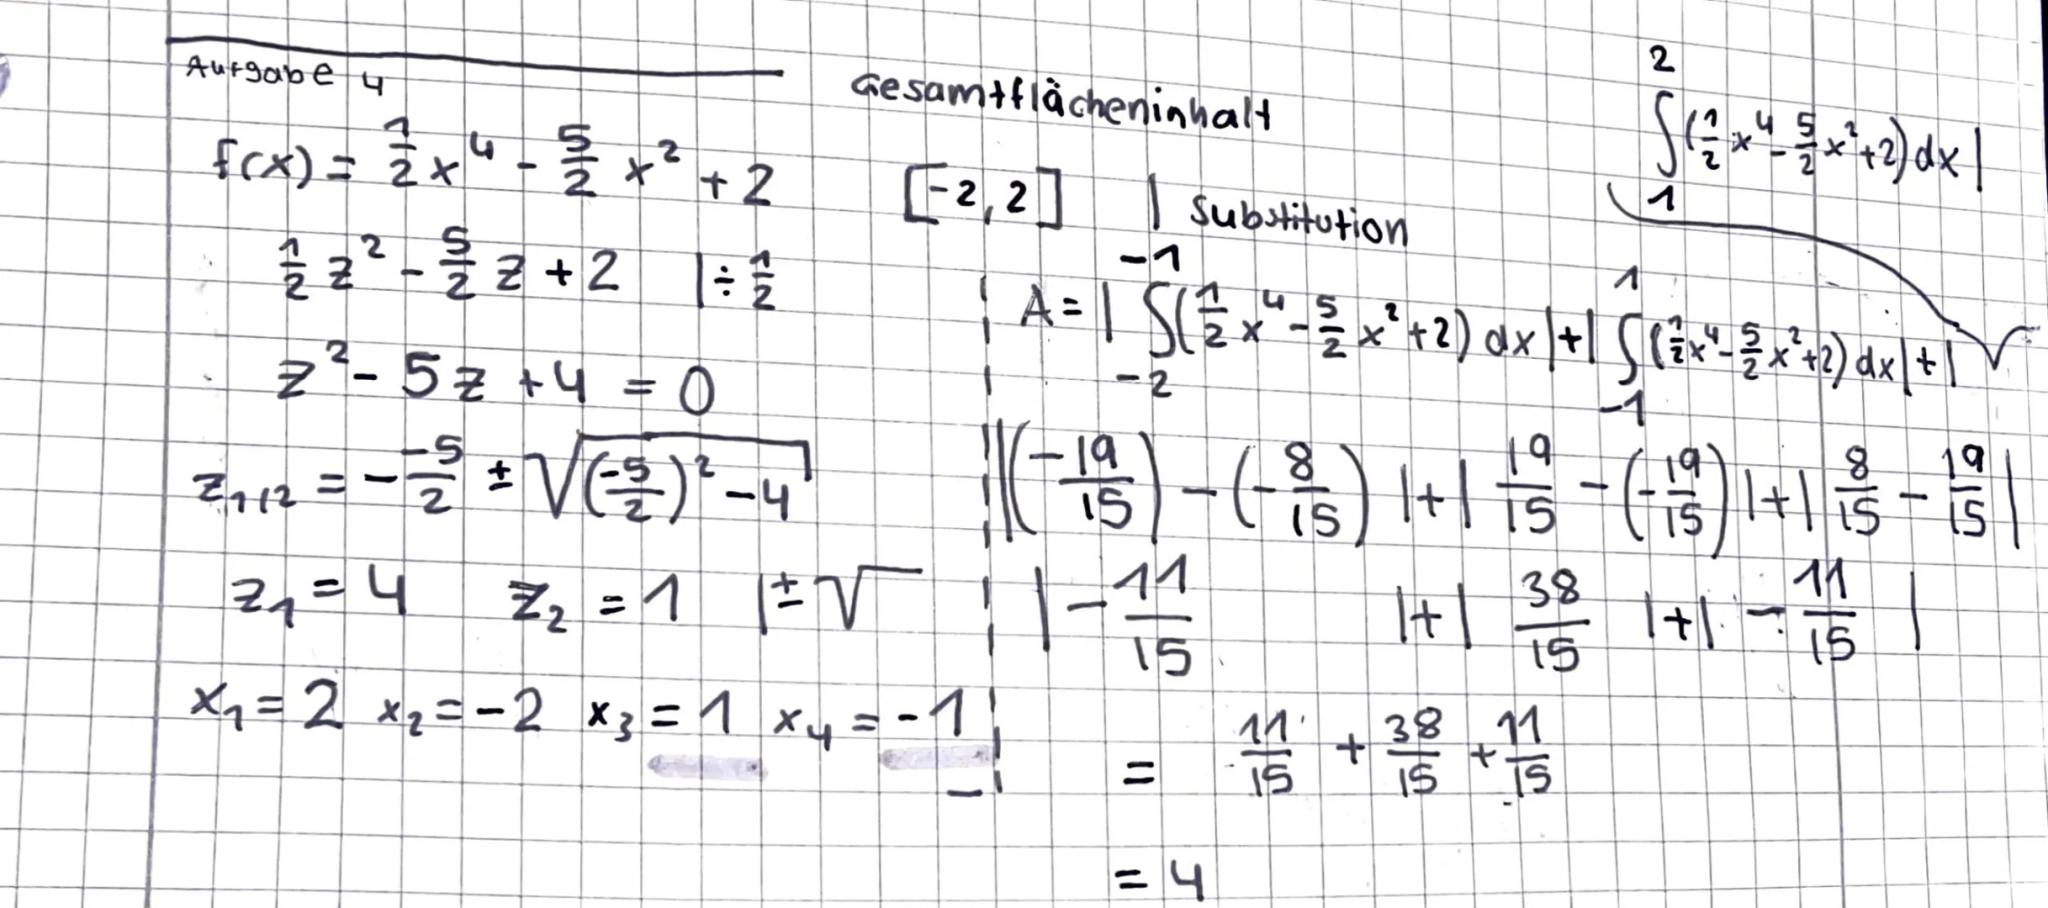 .
Teil A: hilfsmittelfreier Teil (20 Minuten)
Aufgabe 1: Bestimmen Sie die Ableitungen f'(x) und fassen Sie soweit wie
möglich zusammen.
a) 